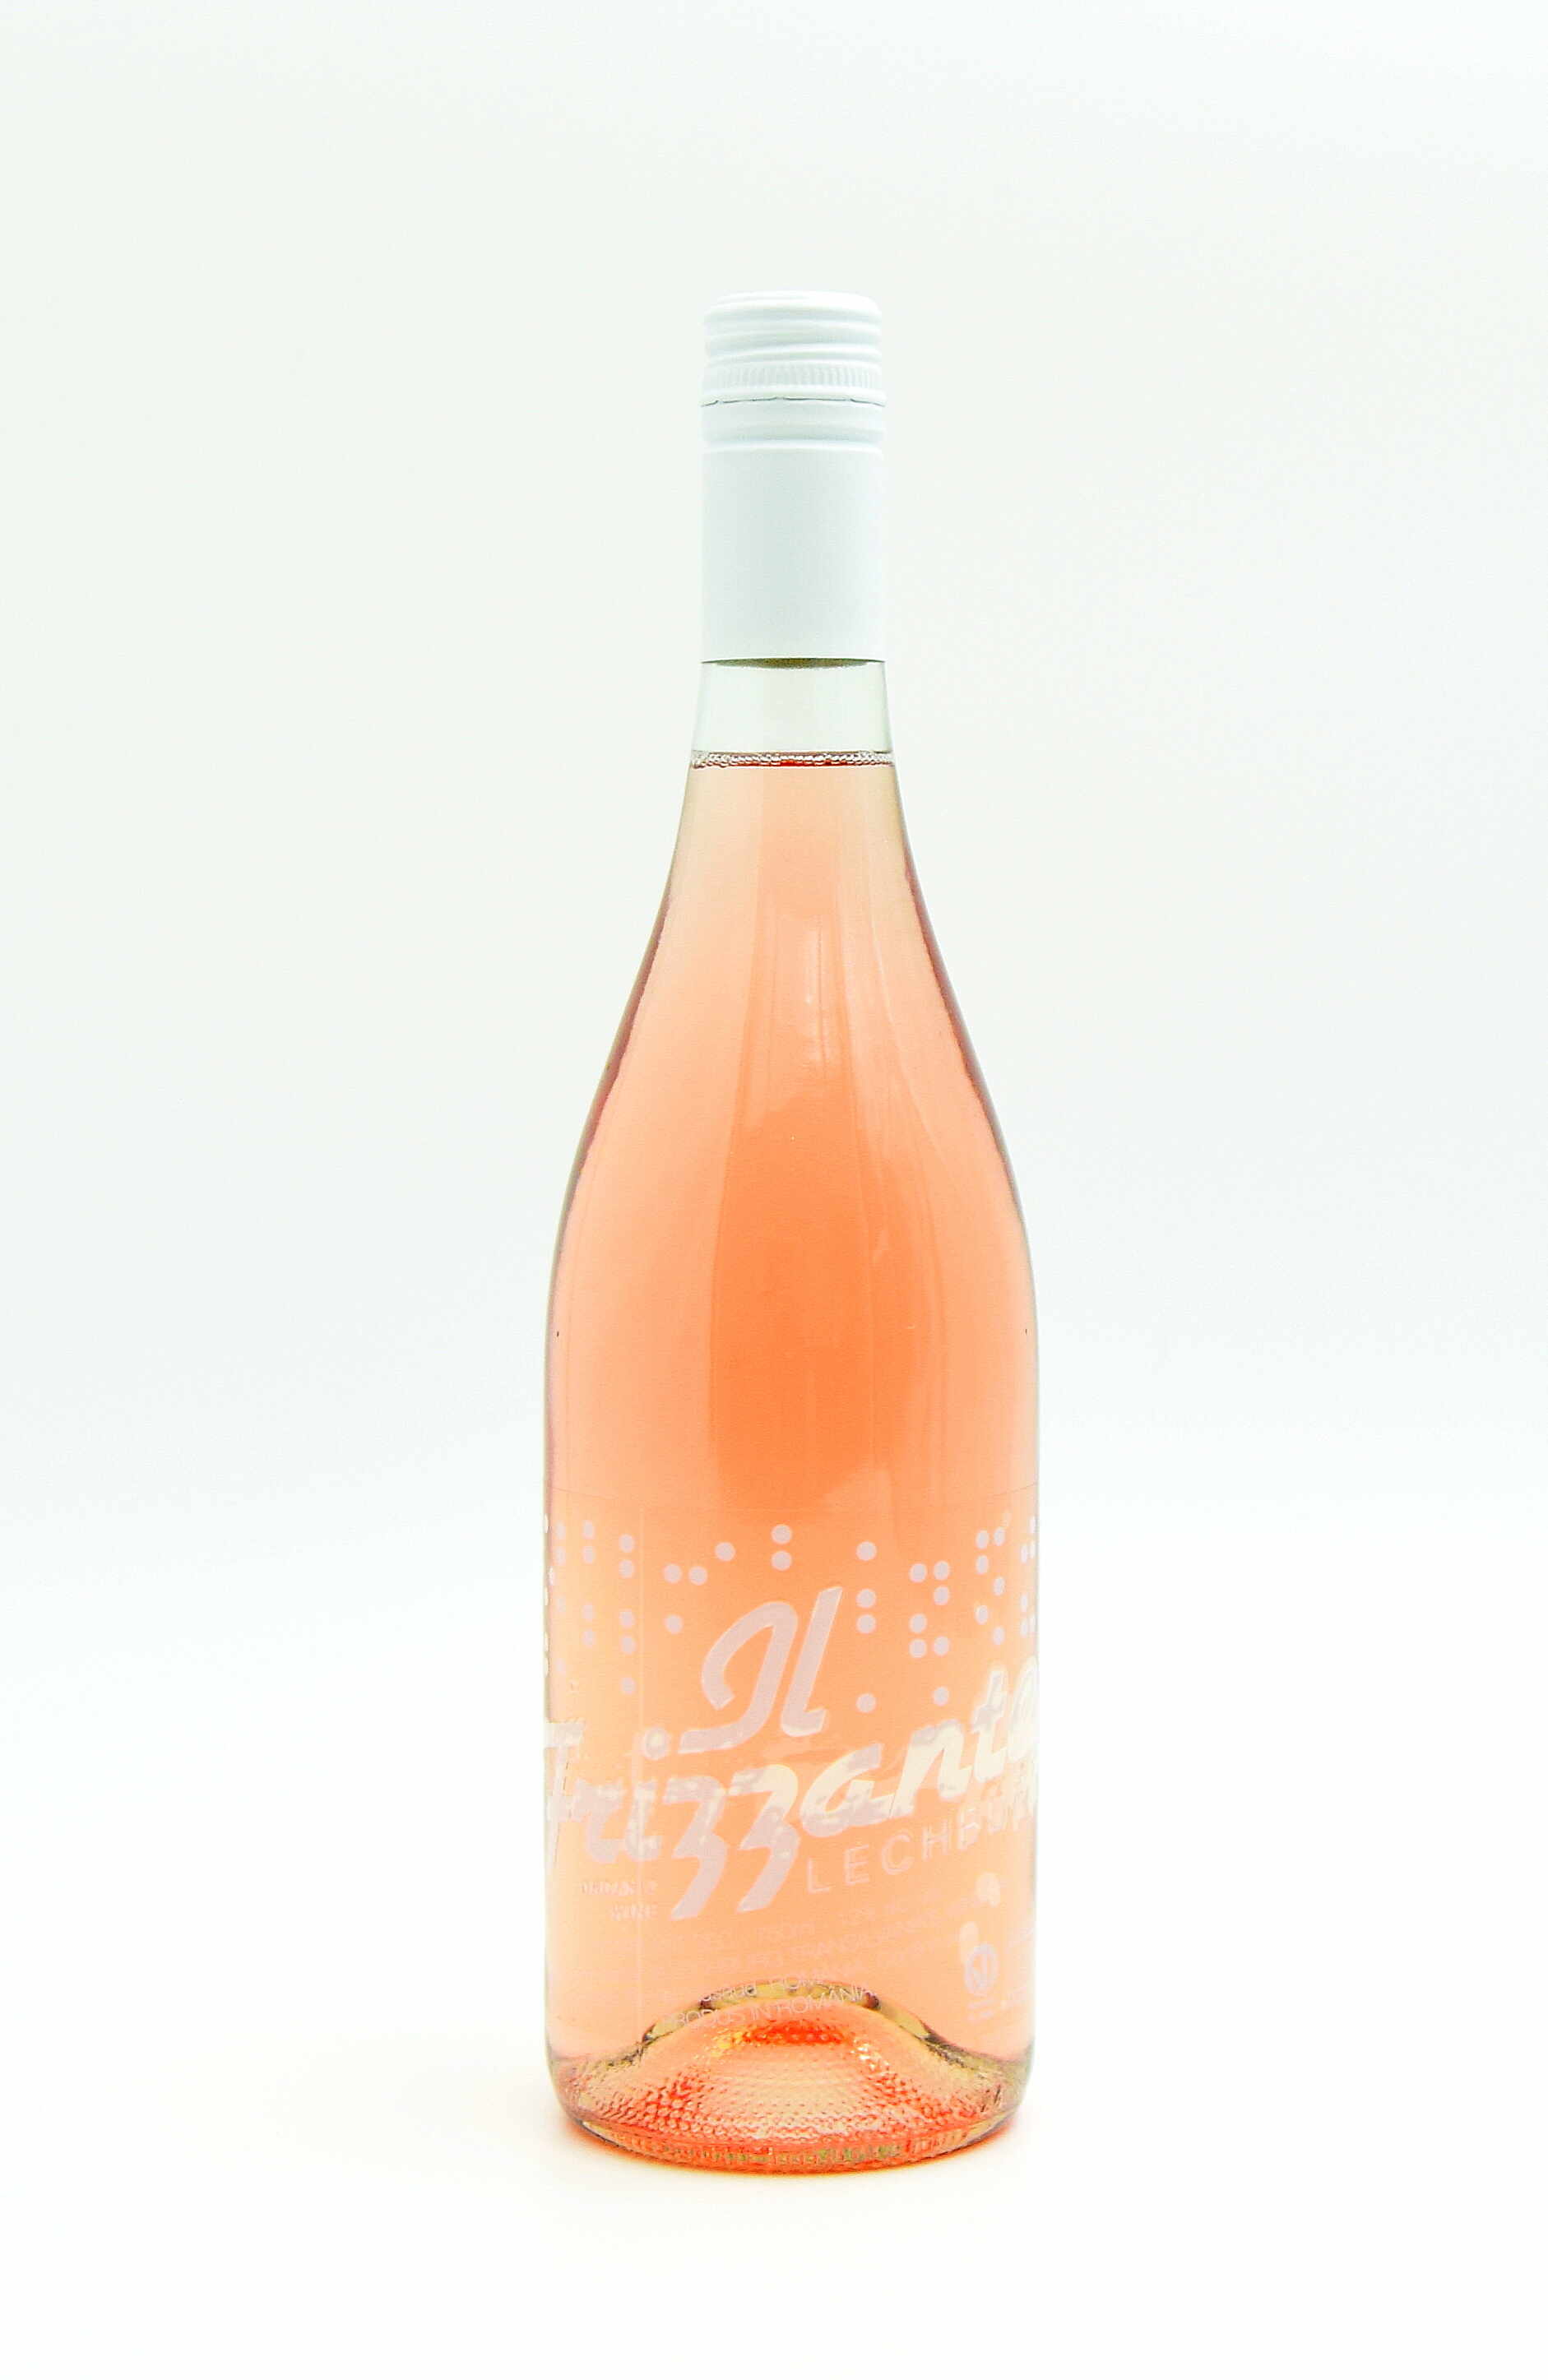 Vin roze - Lechburg il frizzante, sec, 2019 | Lechburg